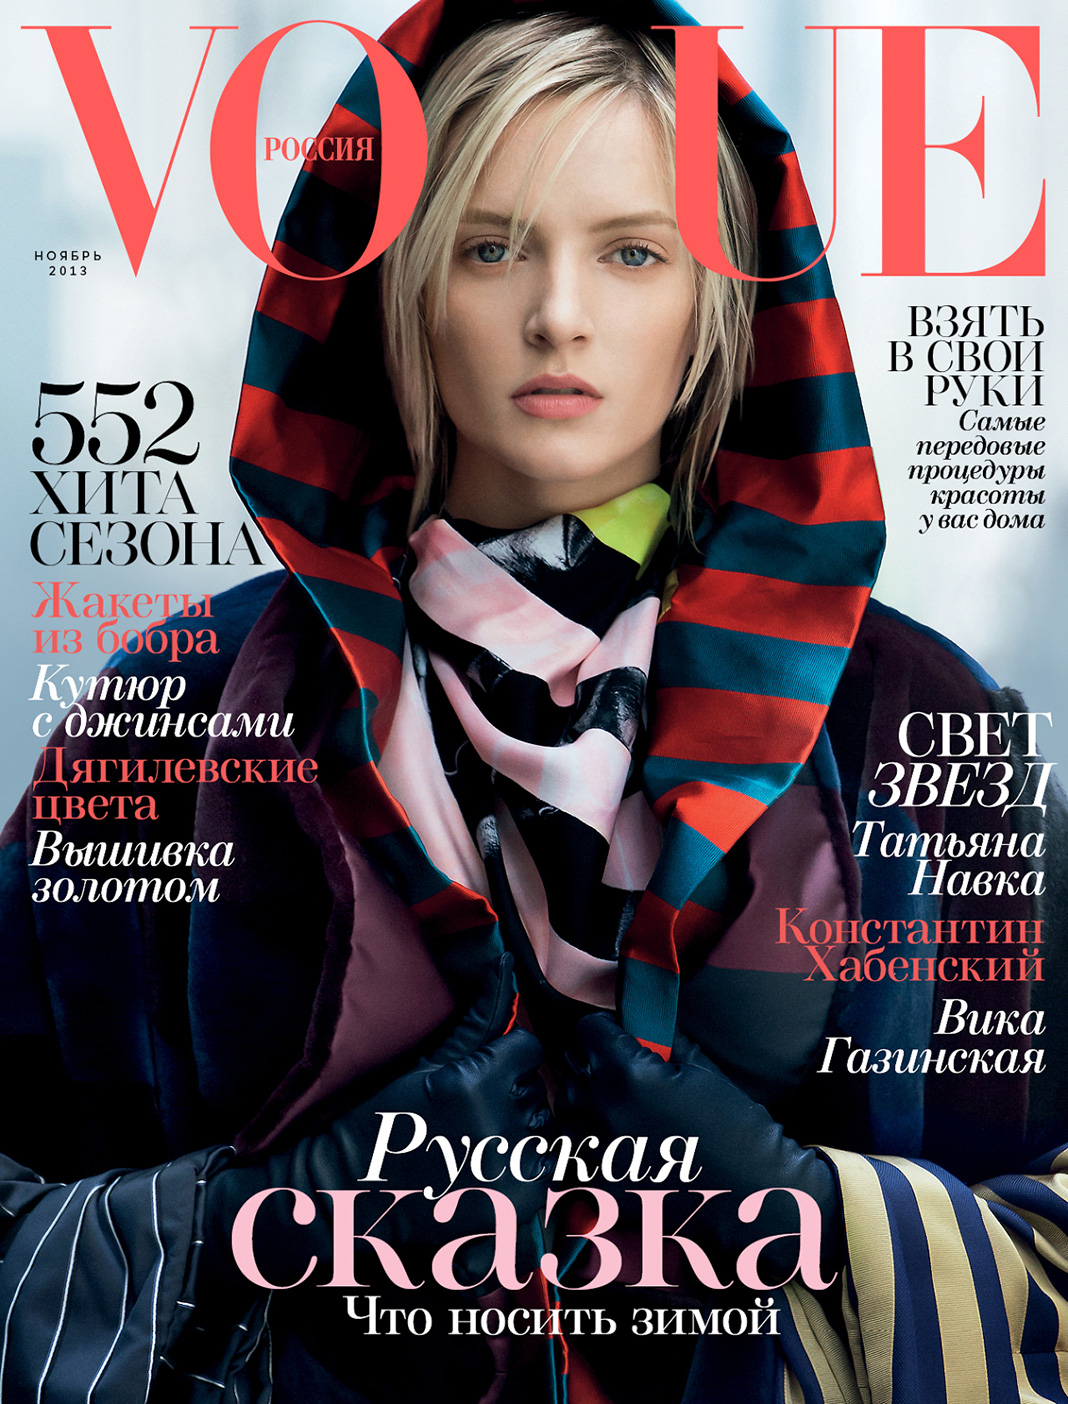 Дарья Строкоус на обложке журнала Vogue Россия, ноябрь 2013 г.